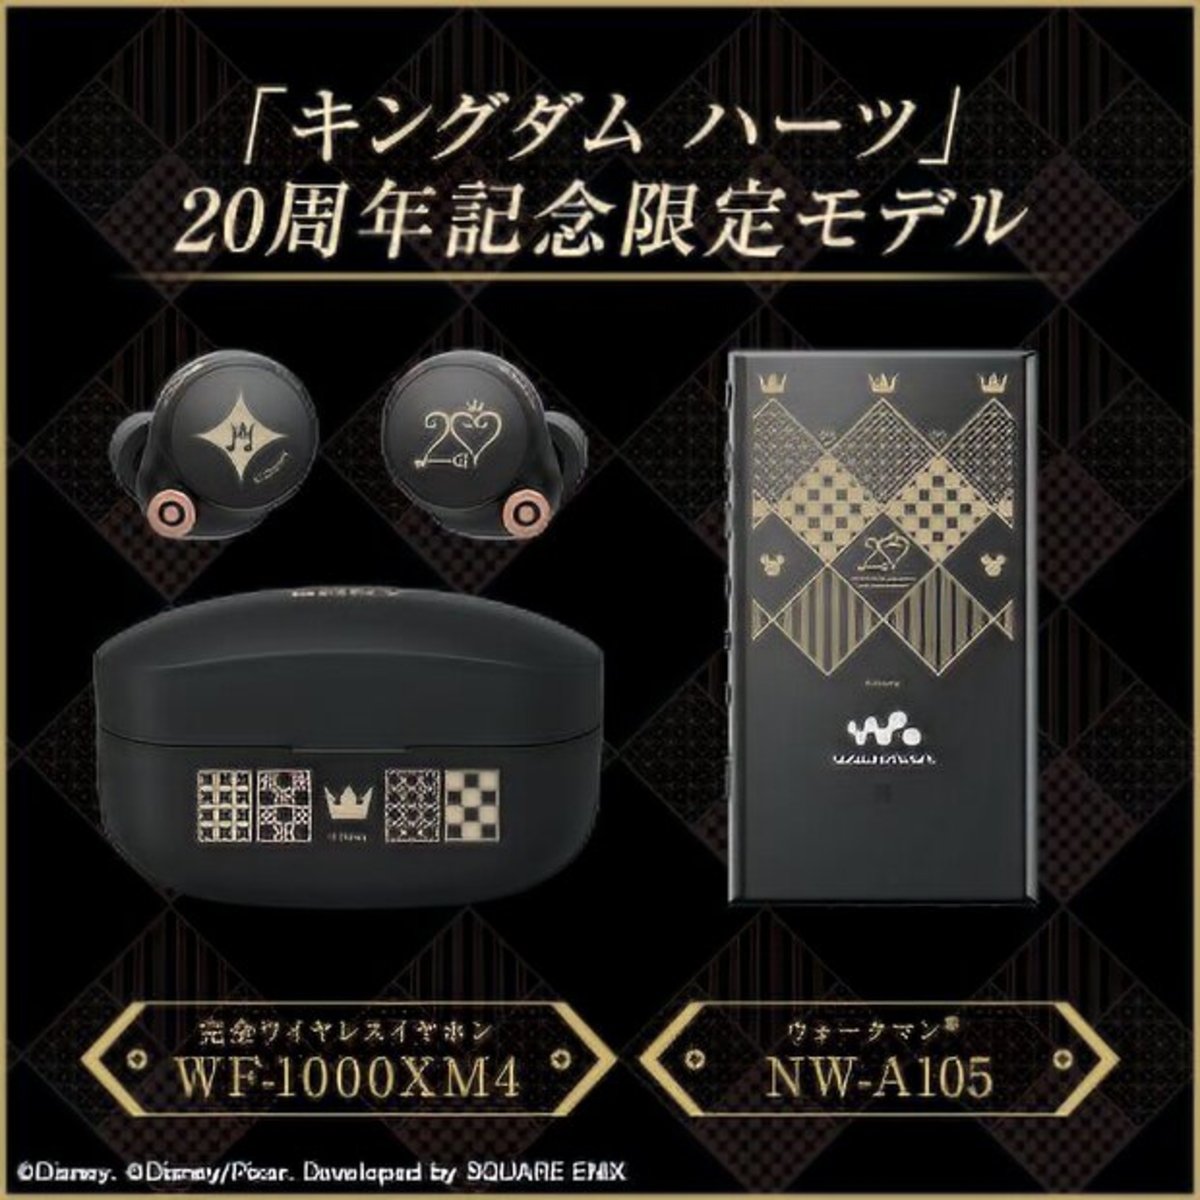 Sony WF-1000XM4 Kingdom Hearts-2